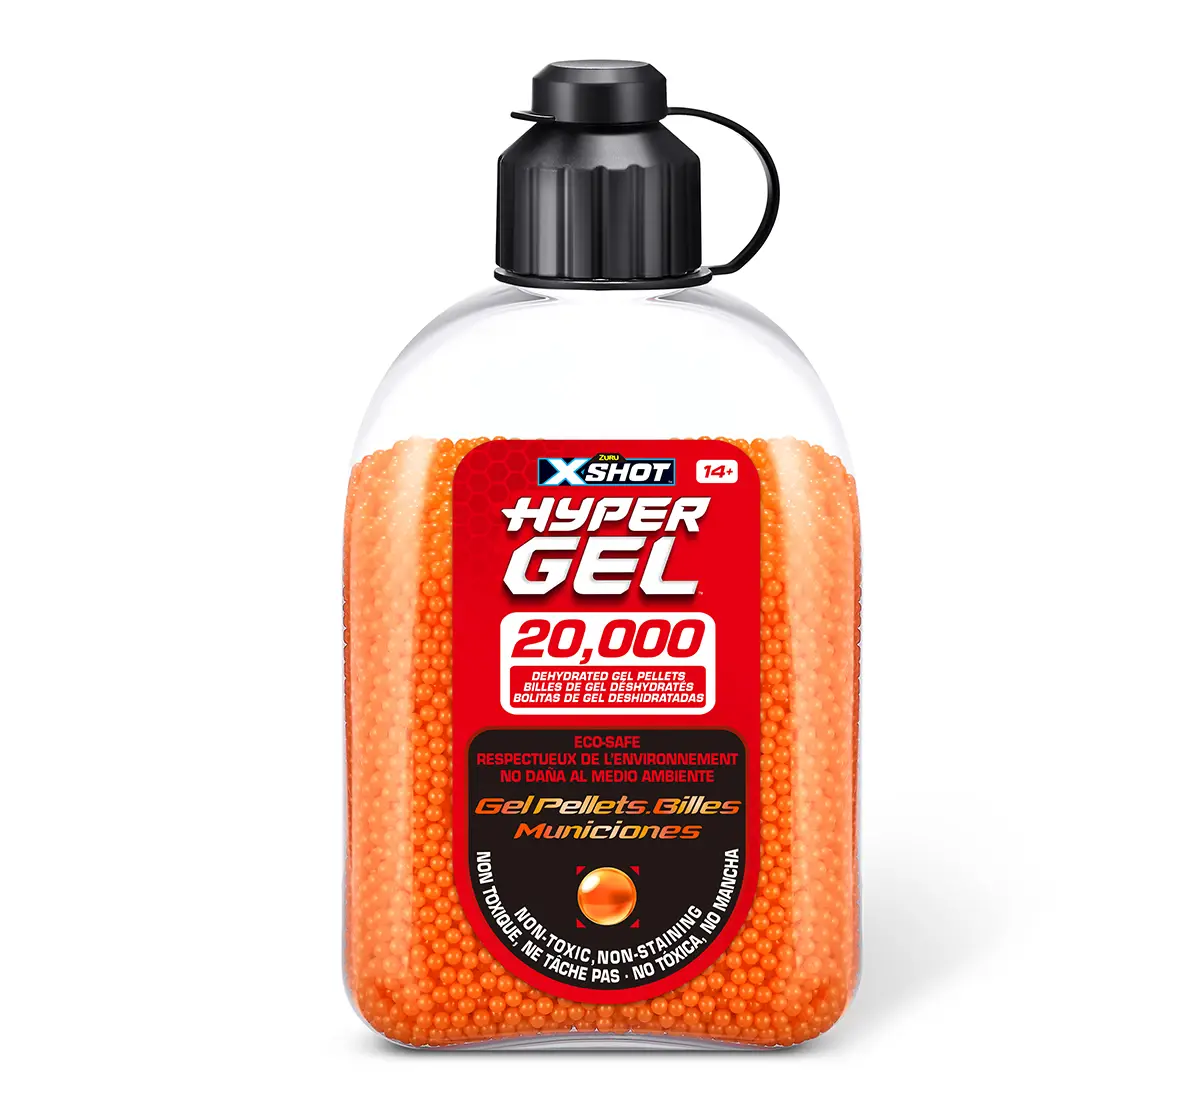 X-shot Hyper Gel Gellet Refill 20k Pcs, 14Y+, Red